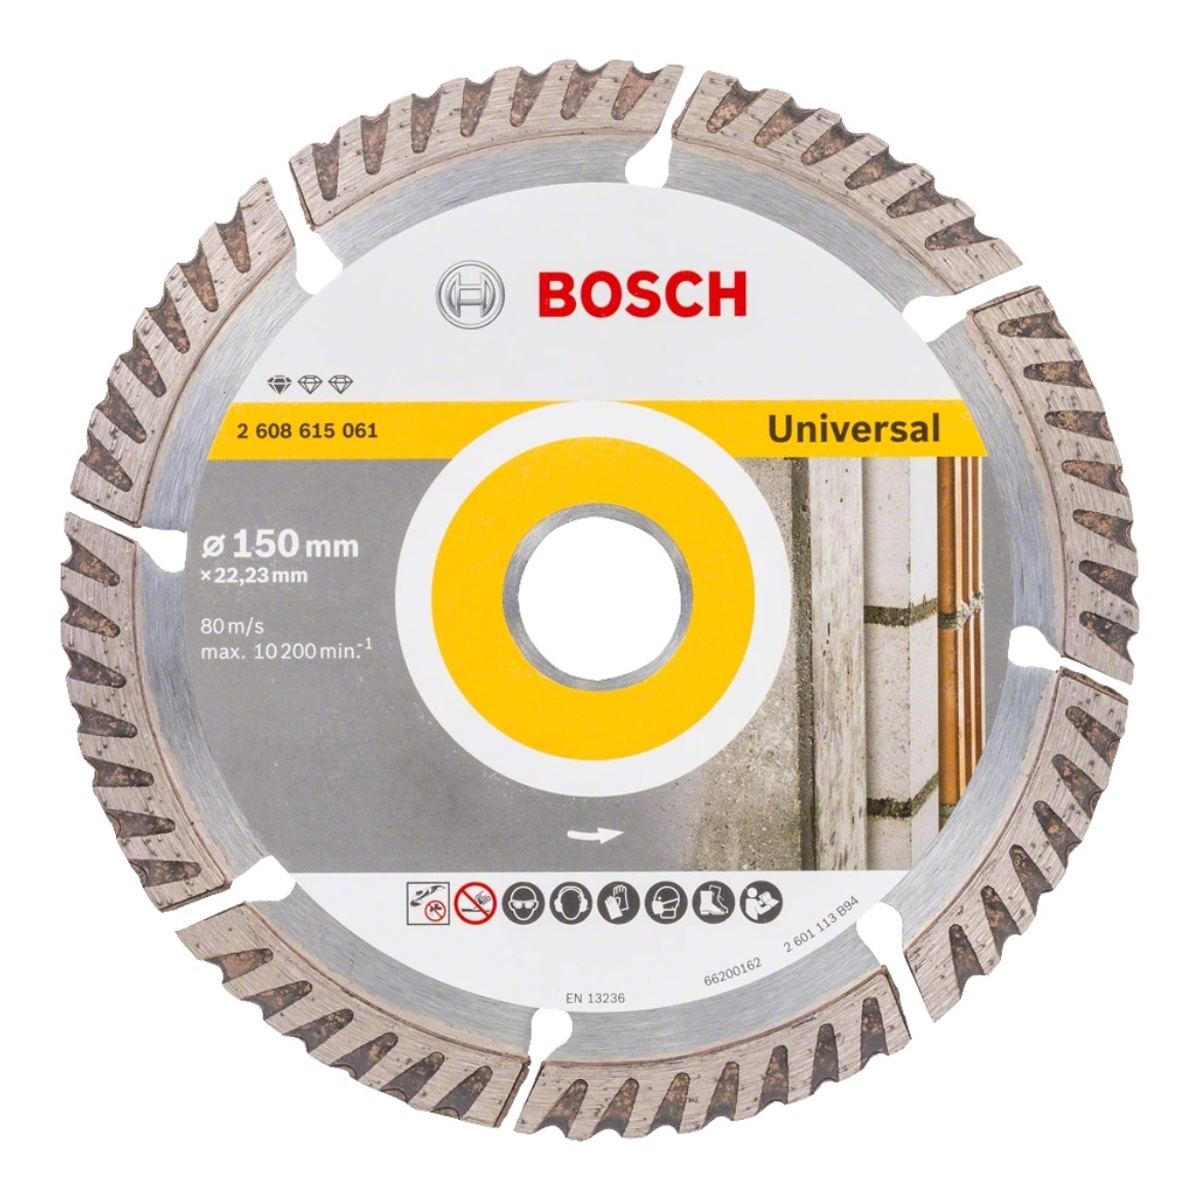 Bosch Blua Standard PROFESSIONAL for Diamanttrennscheibe , BOSCH